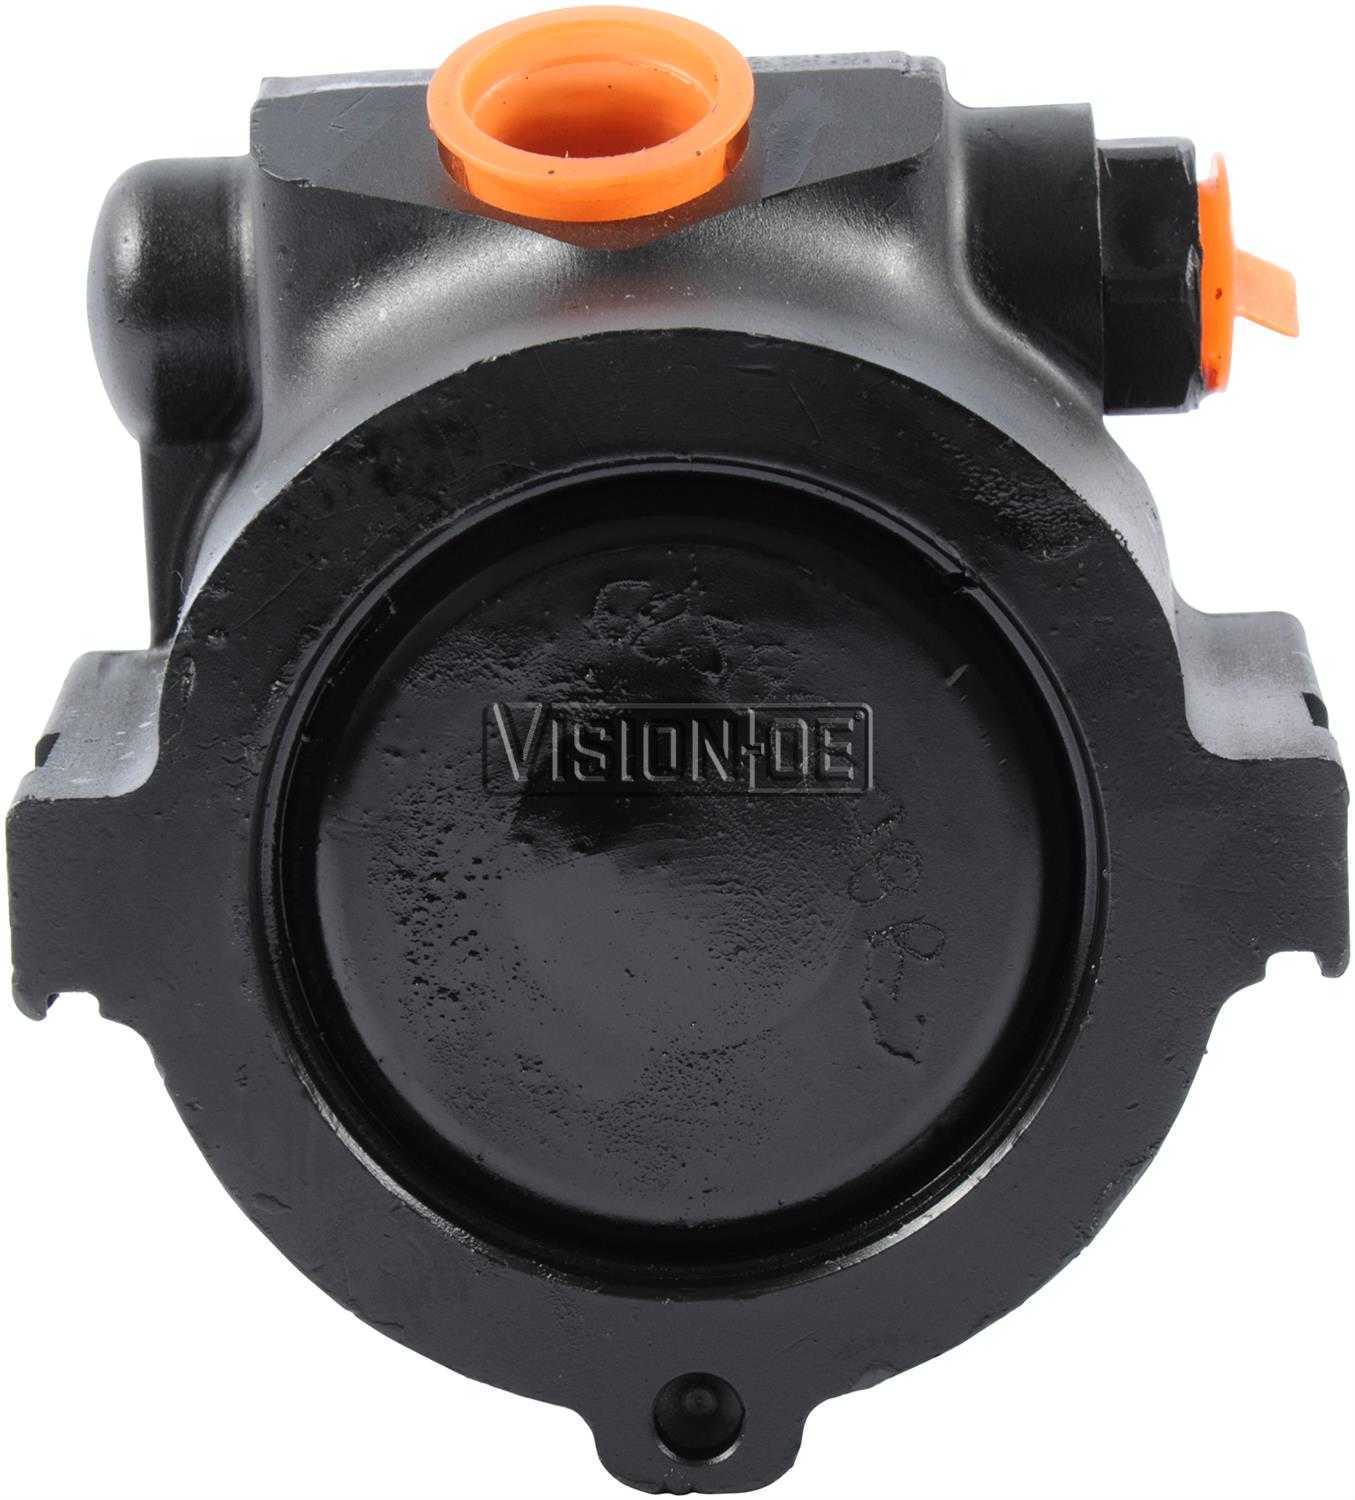 VISION-OE - Reman Power Steering Pump - VOE 730-0143